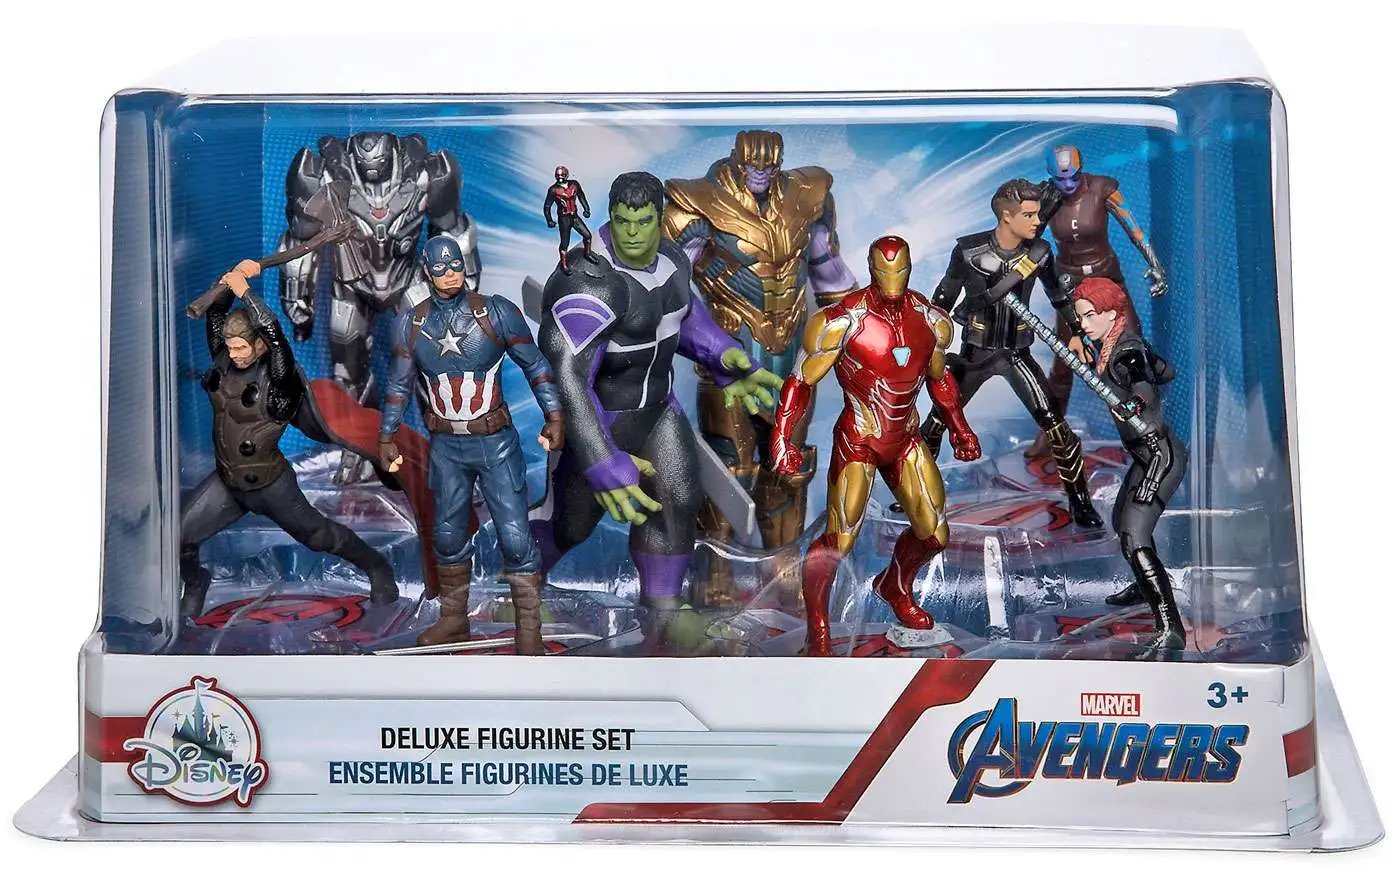 Avengers - Figurine Marvel Avengers Endgame Titan deluxe Hulk 30